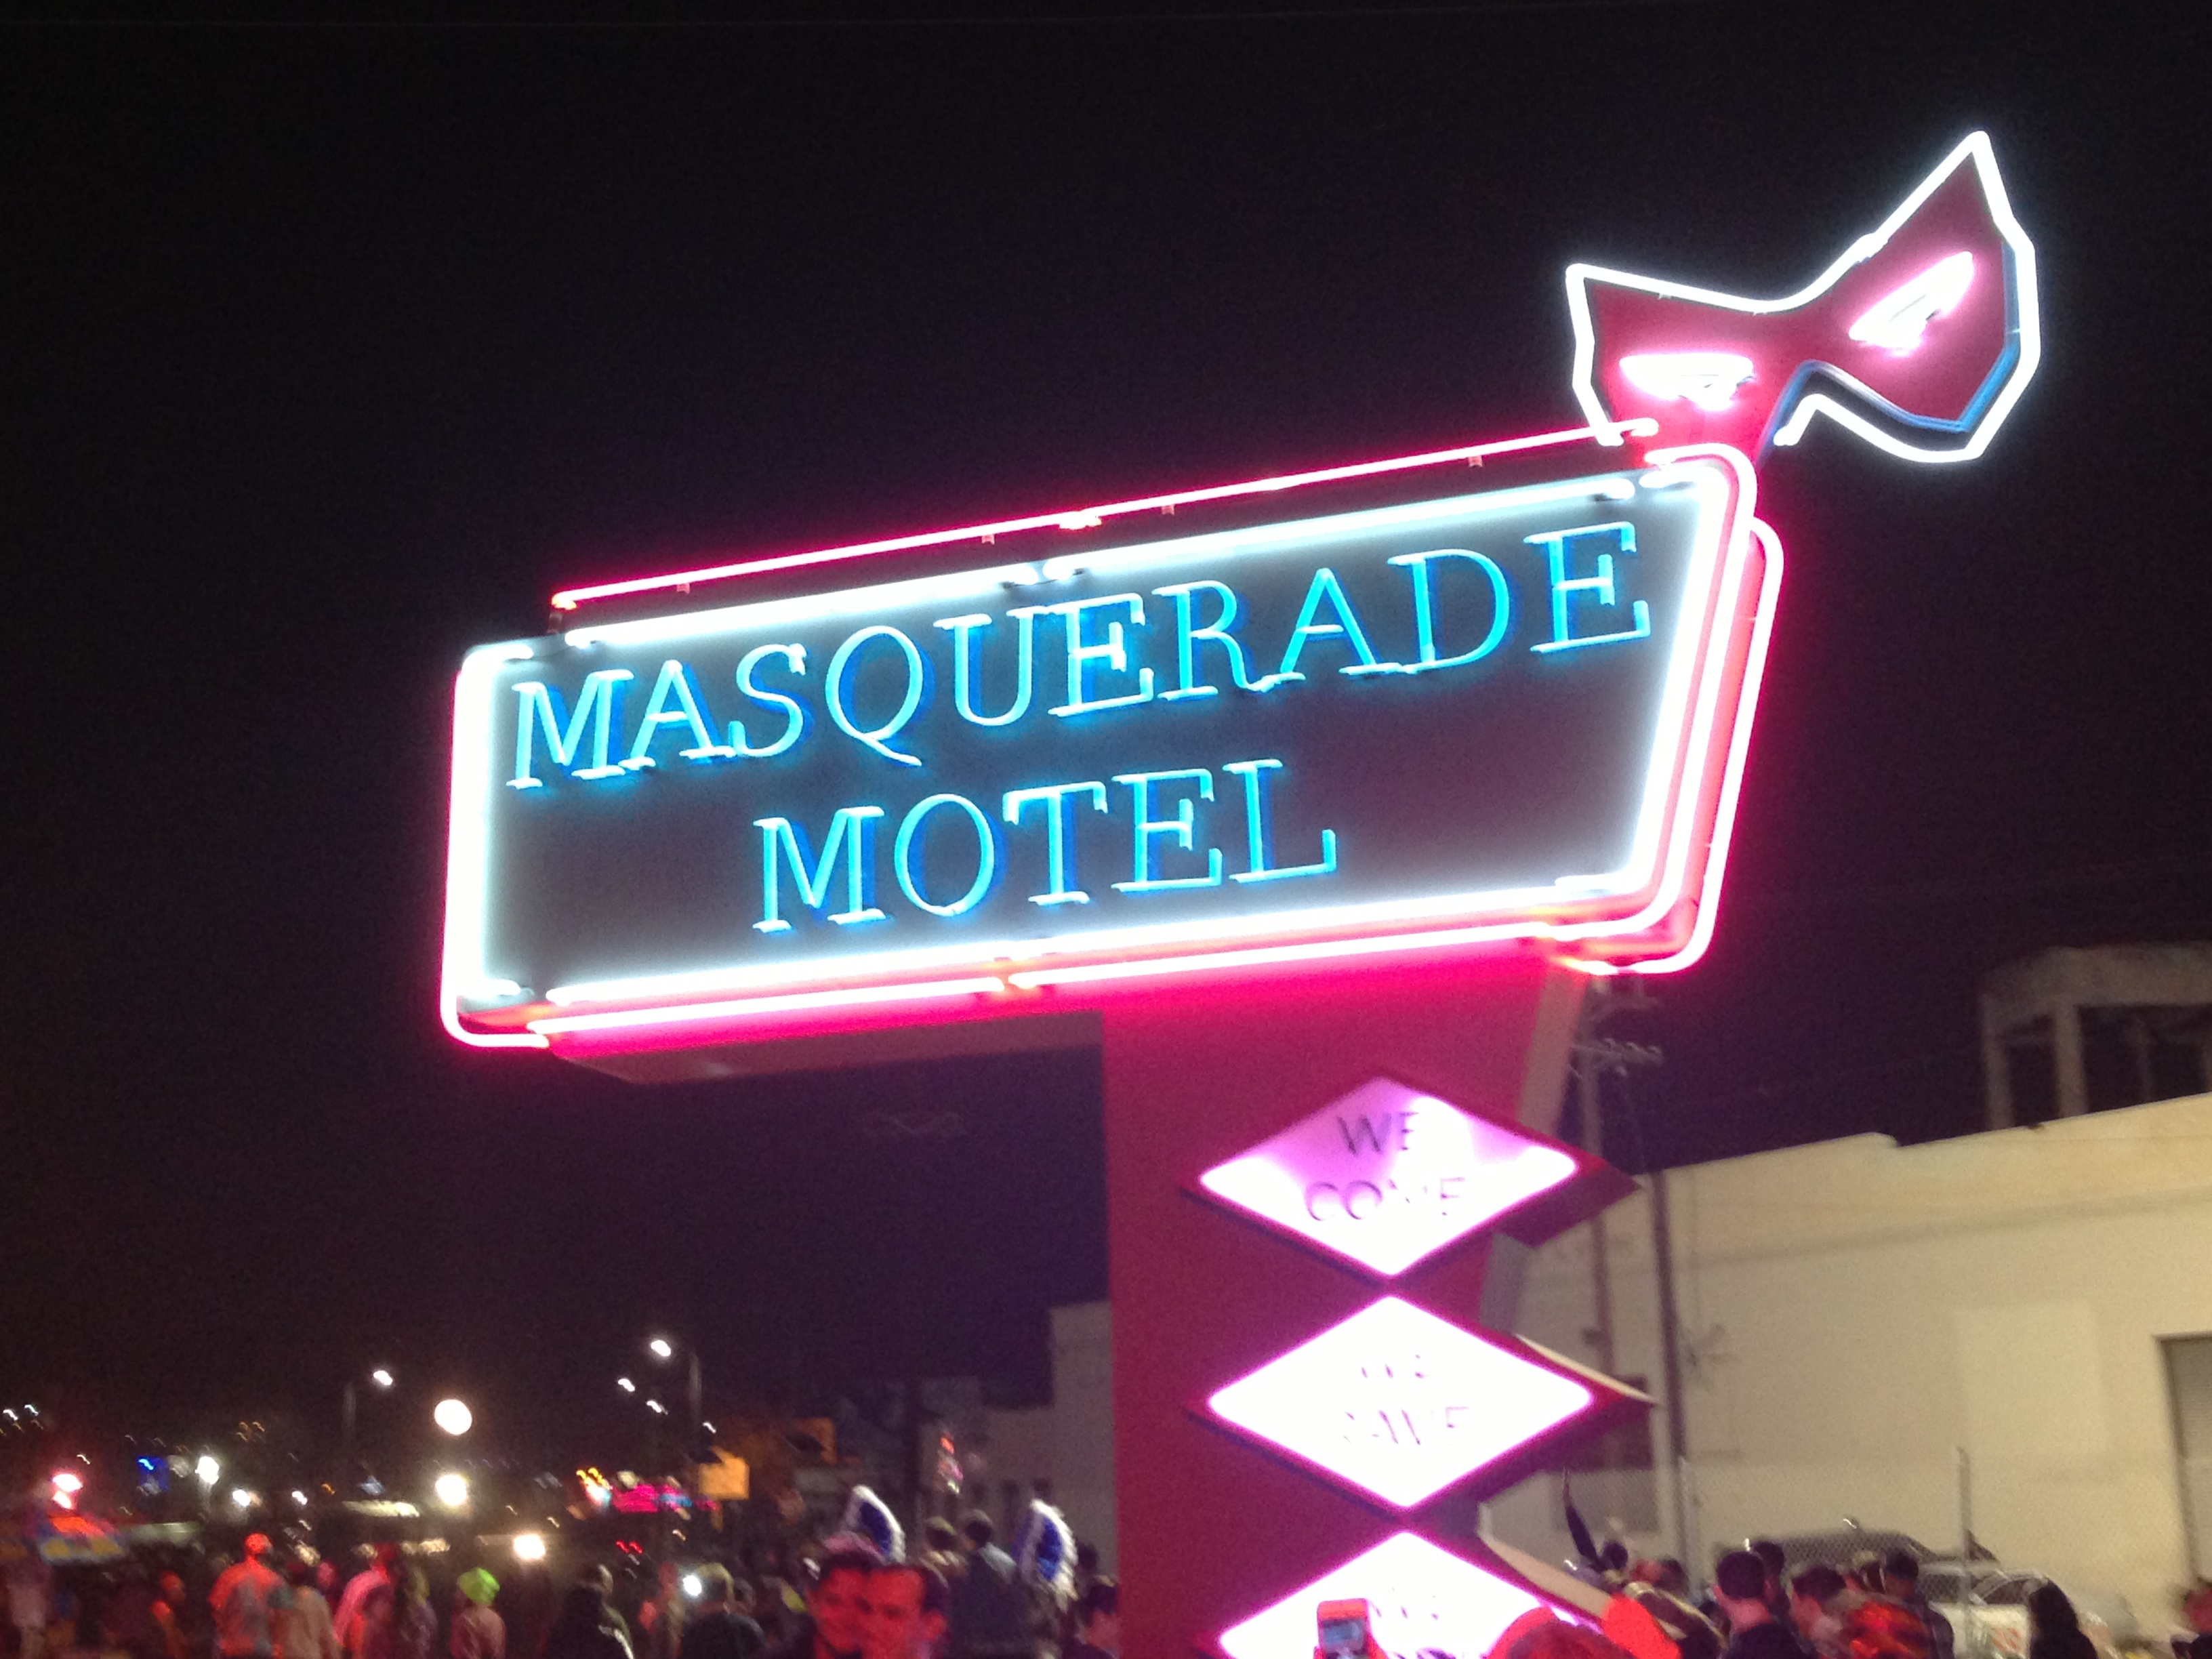 Masquerade Motel - Swedish House Mafia